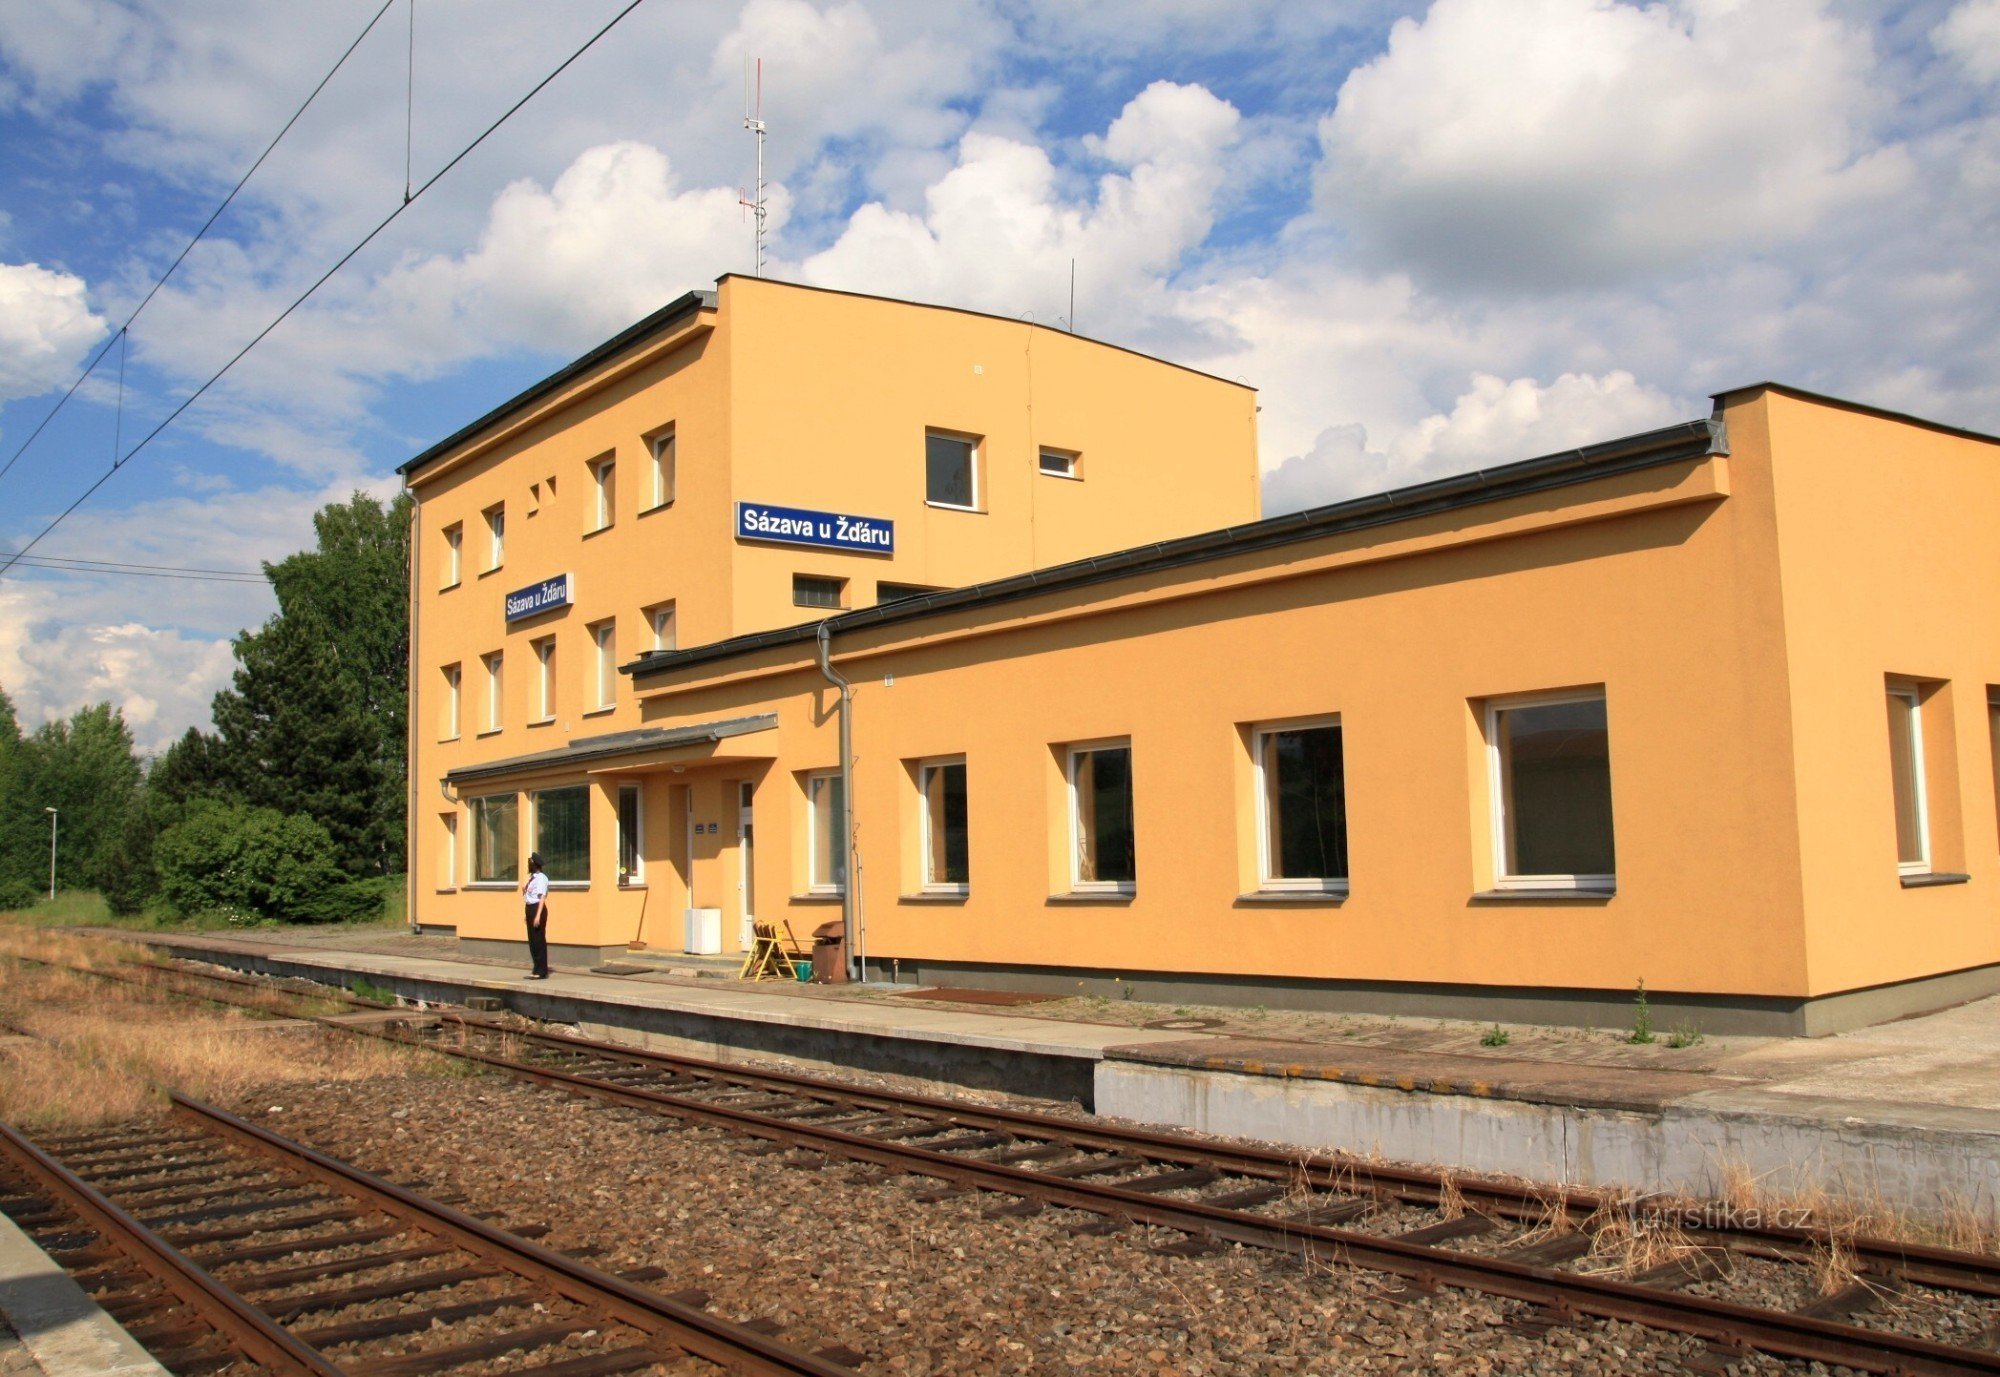 Sázava u Žďár - rautatieasema